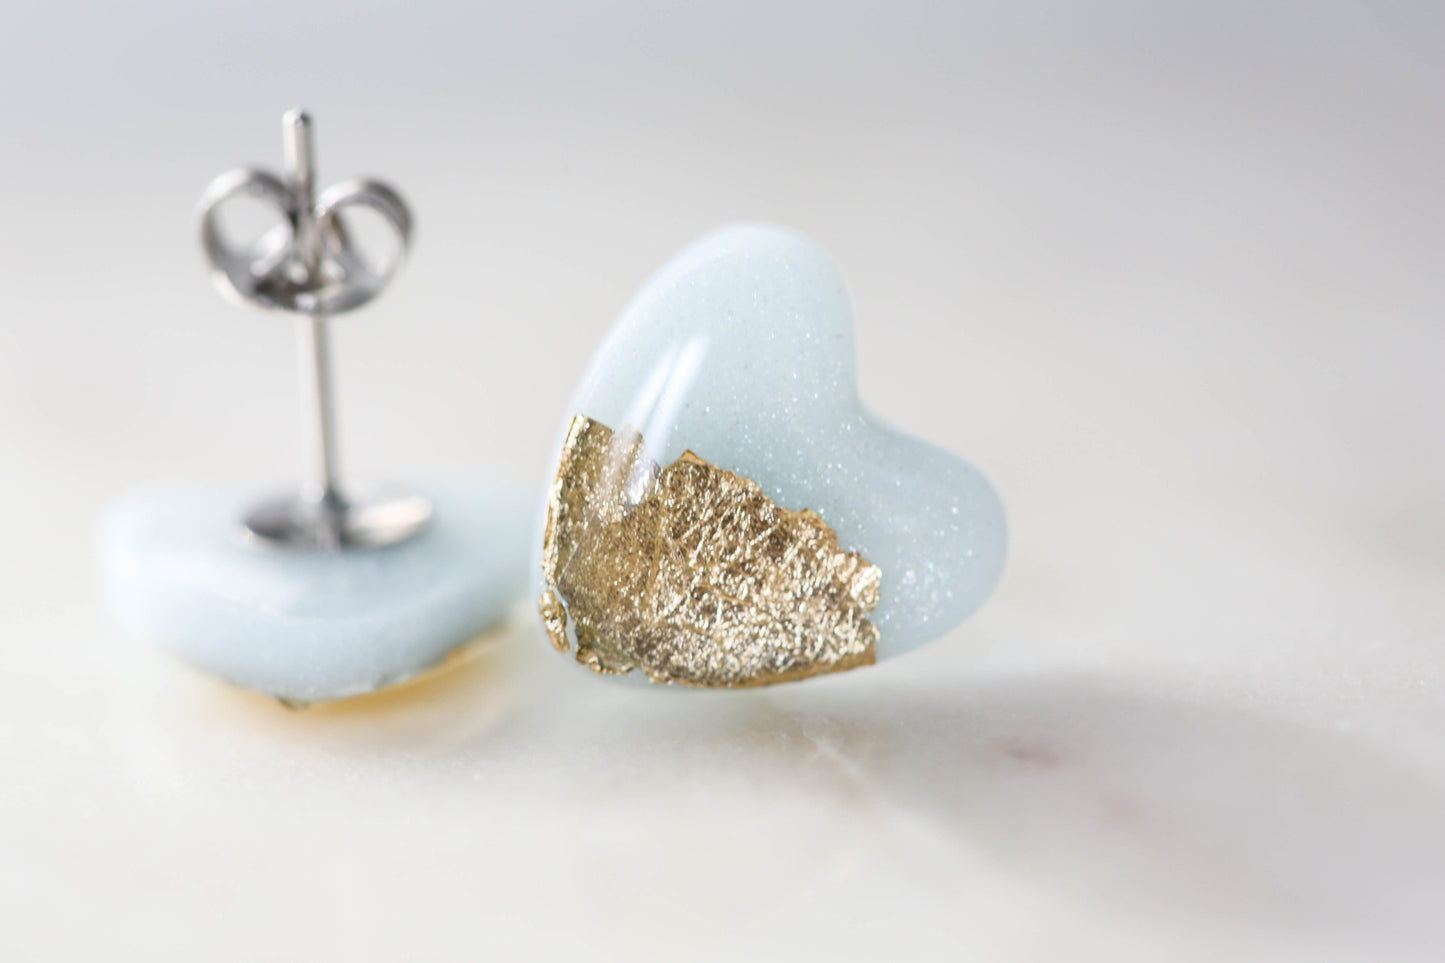 Sky blue heart studs earrings freeshipping - Ollijewelry